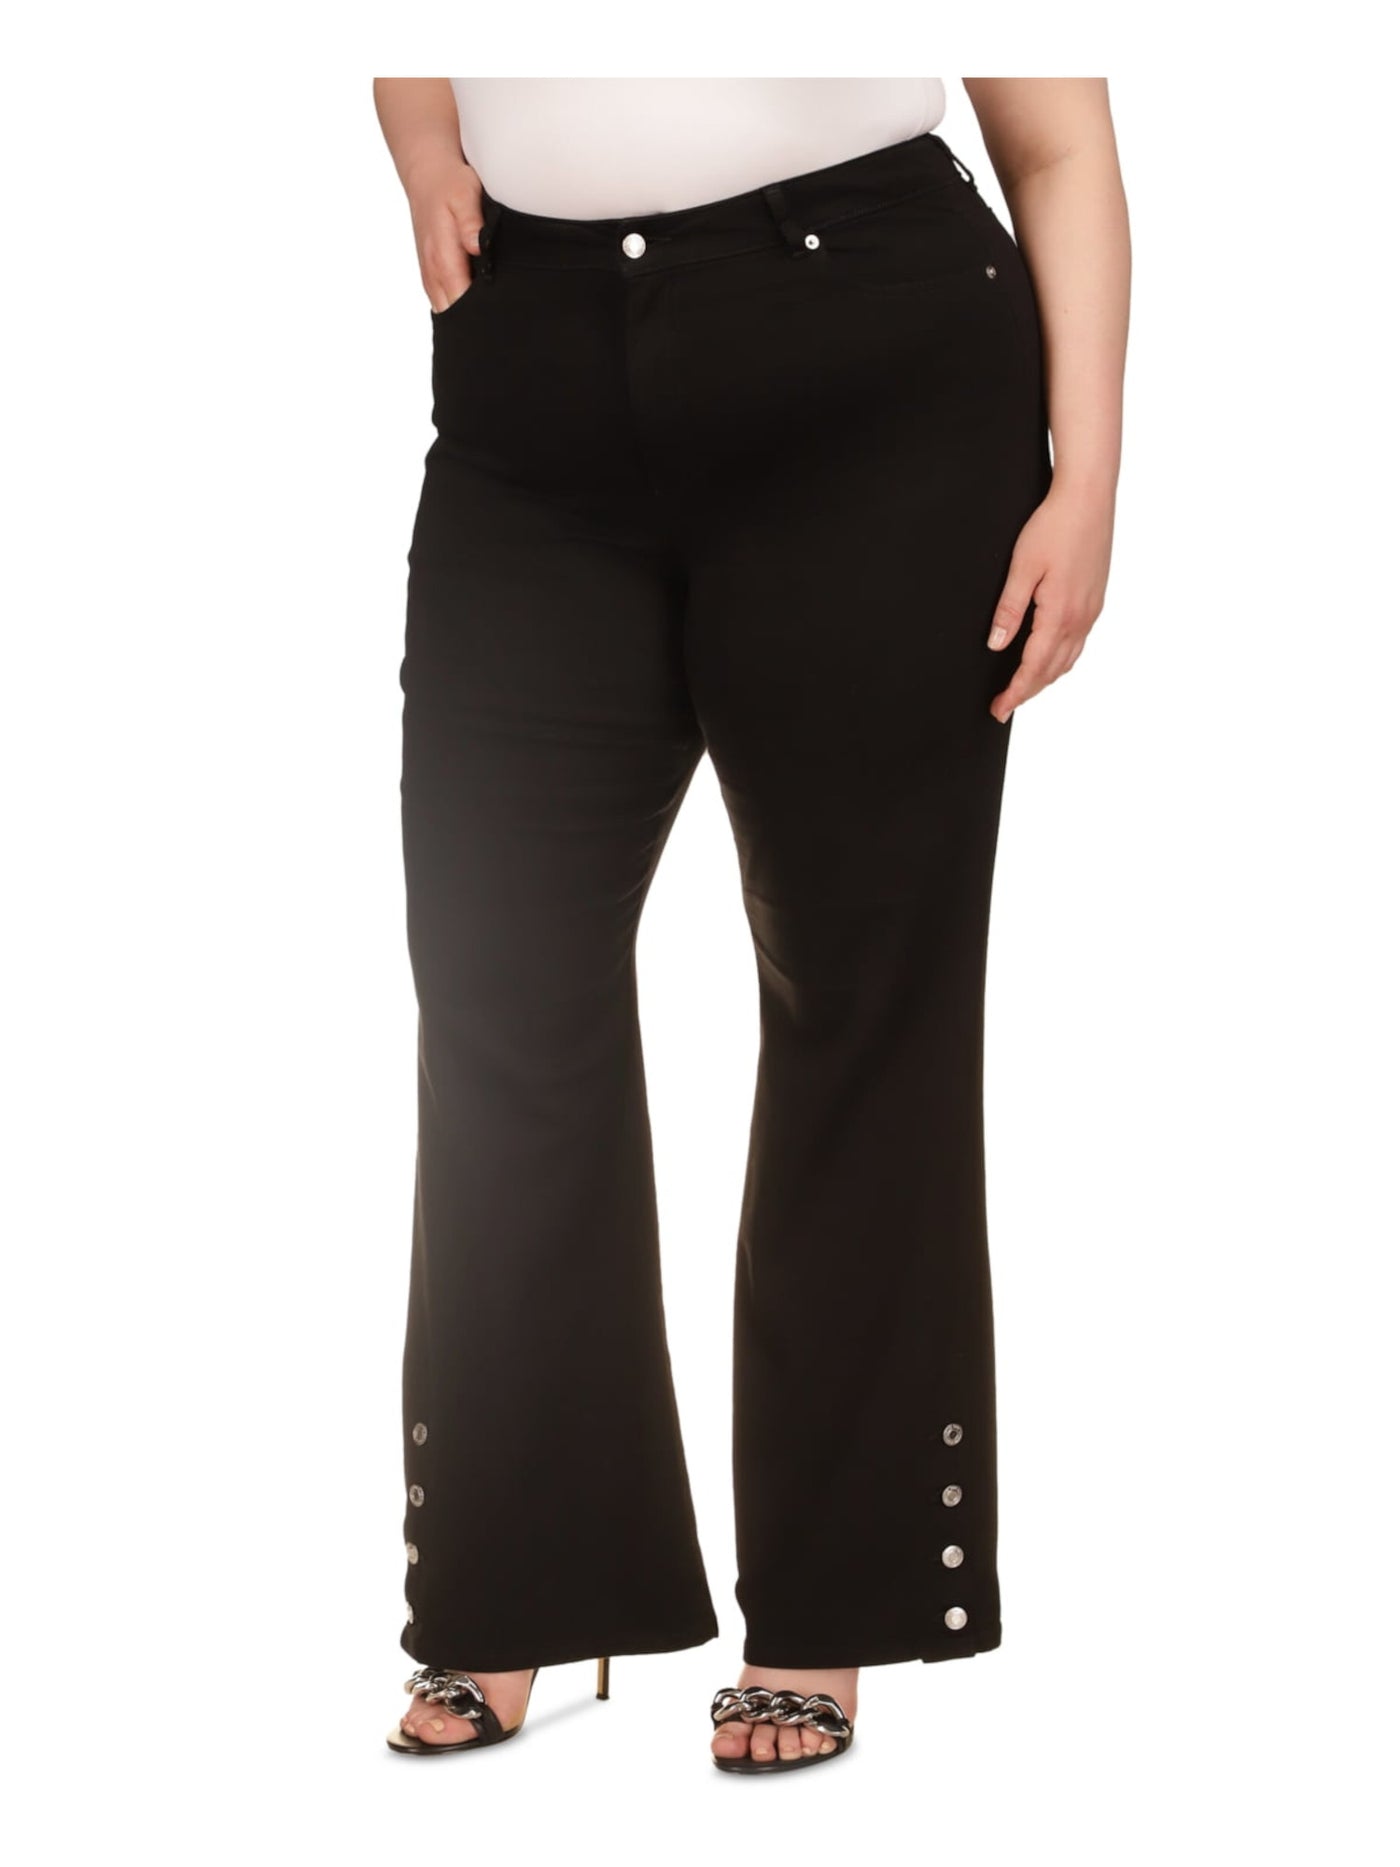 MICHAEL KORS Womens Black Zippered Pocketed Button-hems High Waist Jeans Plus 22W